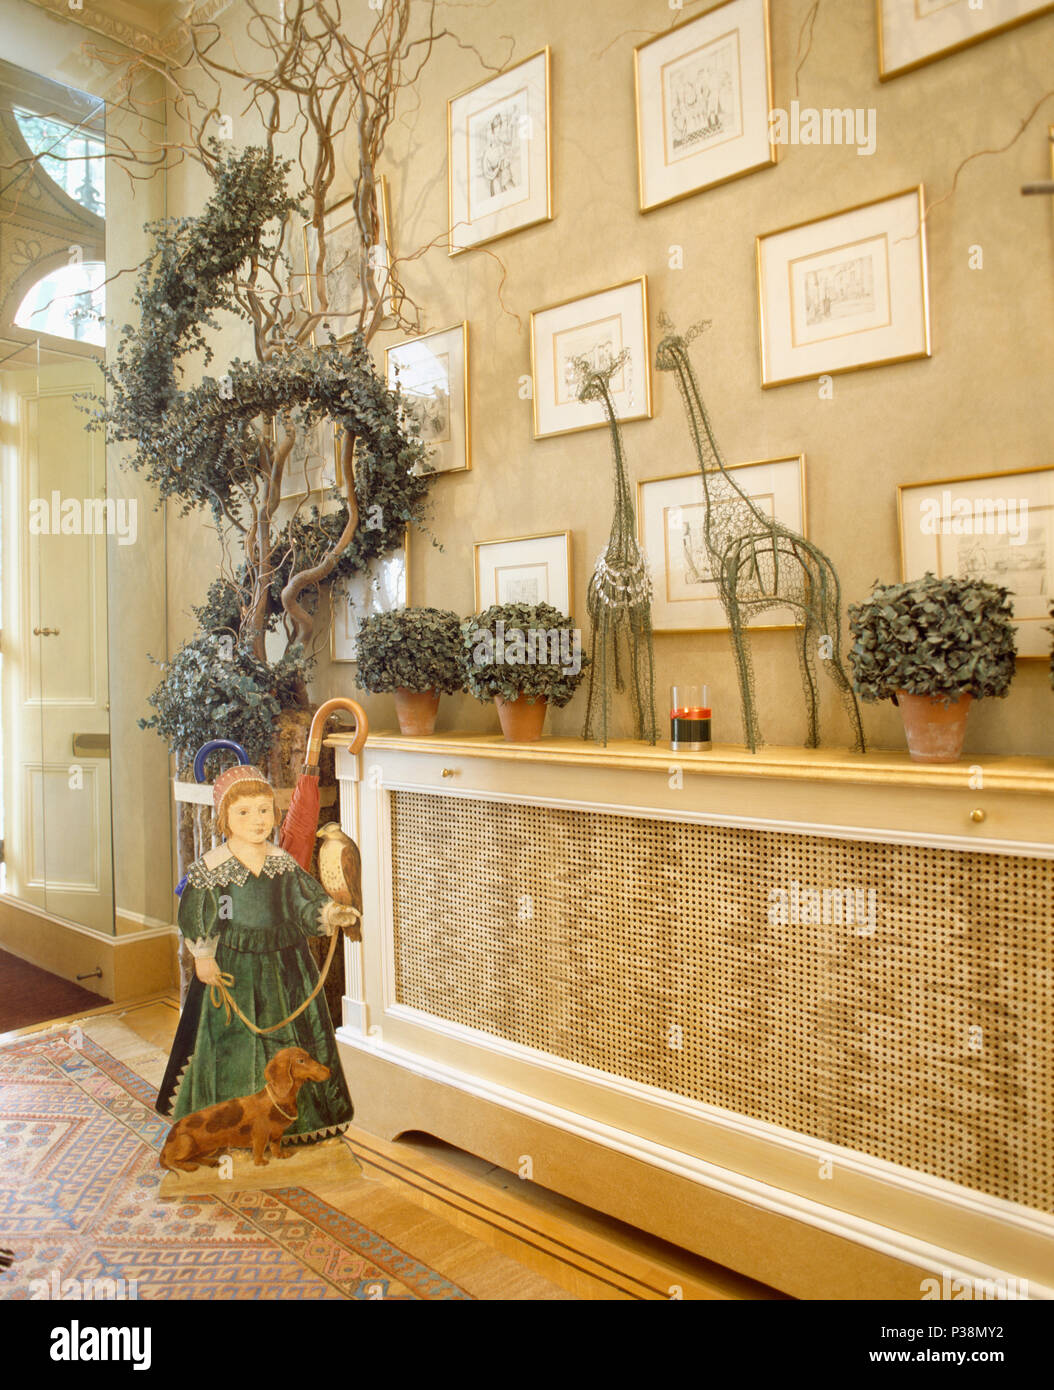 Una dimensionale figura in legno accanto a ramoscelli con fodera greenfoliage garland nella hall con il coperchio sul radiatore Foto Stock